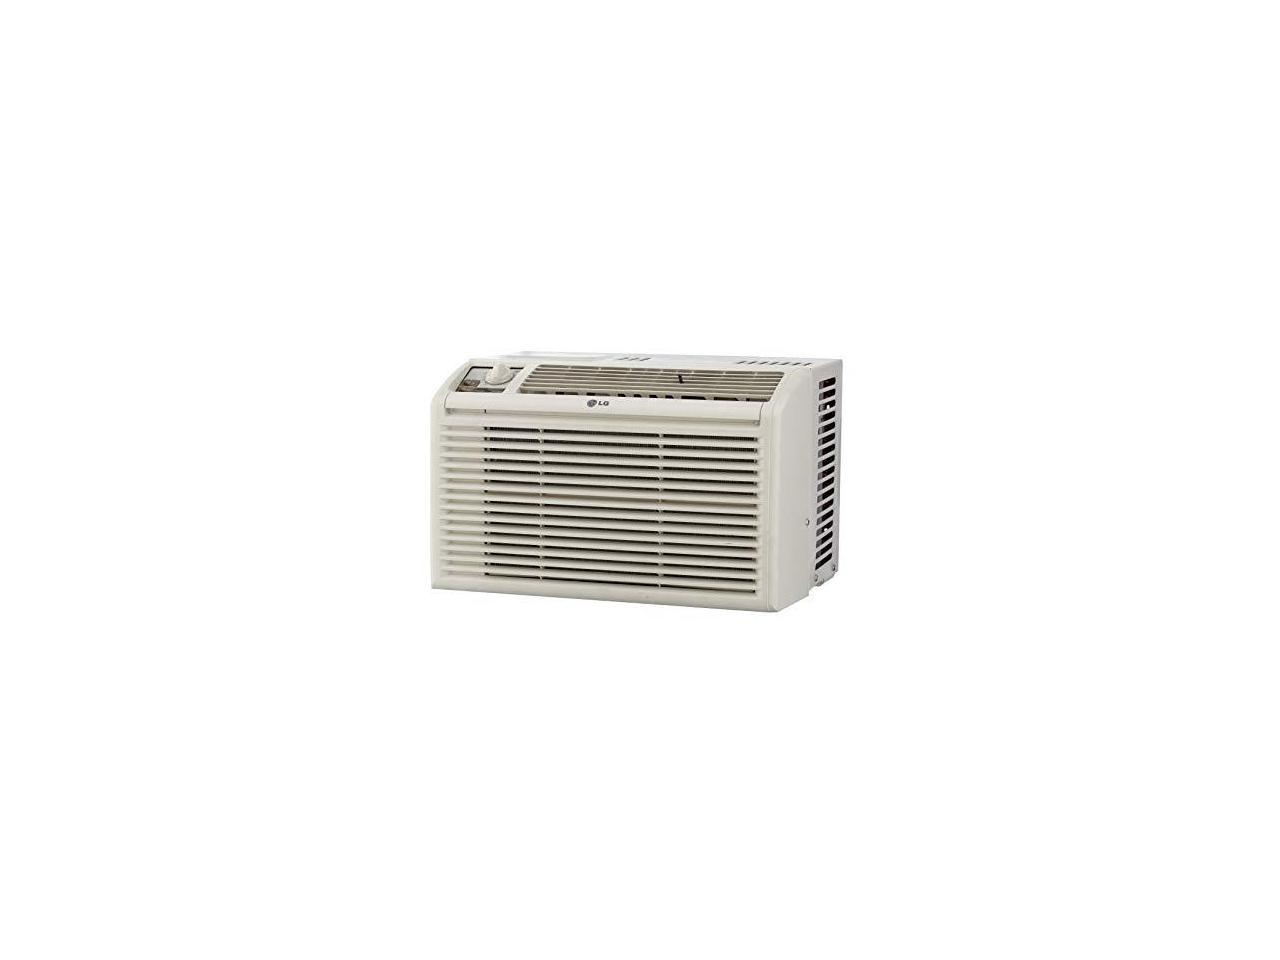 LG LW5016 440W 115V 5000 BTU Window Air Conditioner - Newegg.com